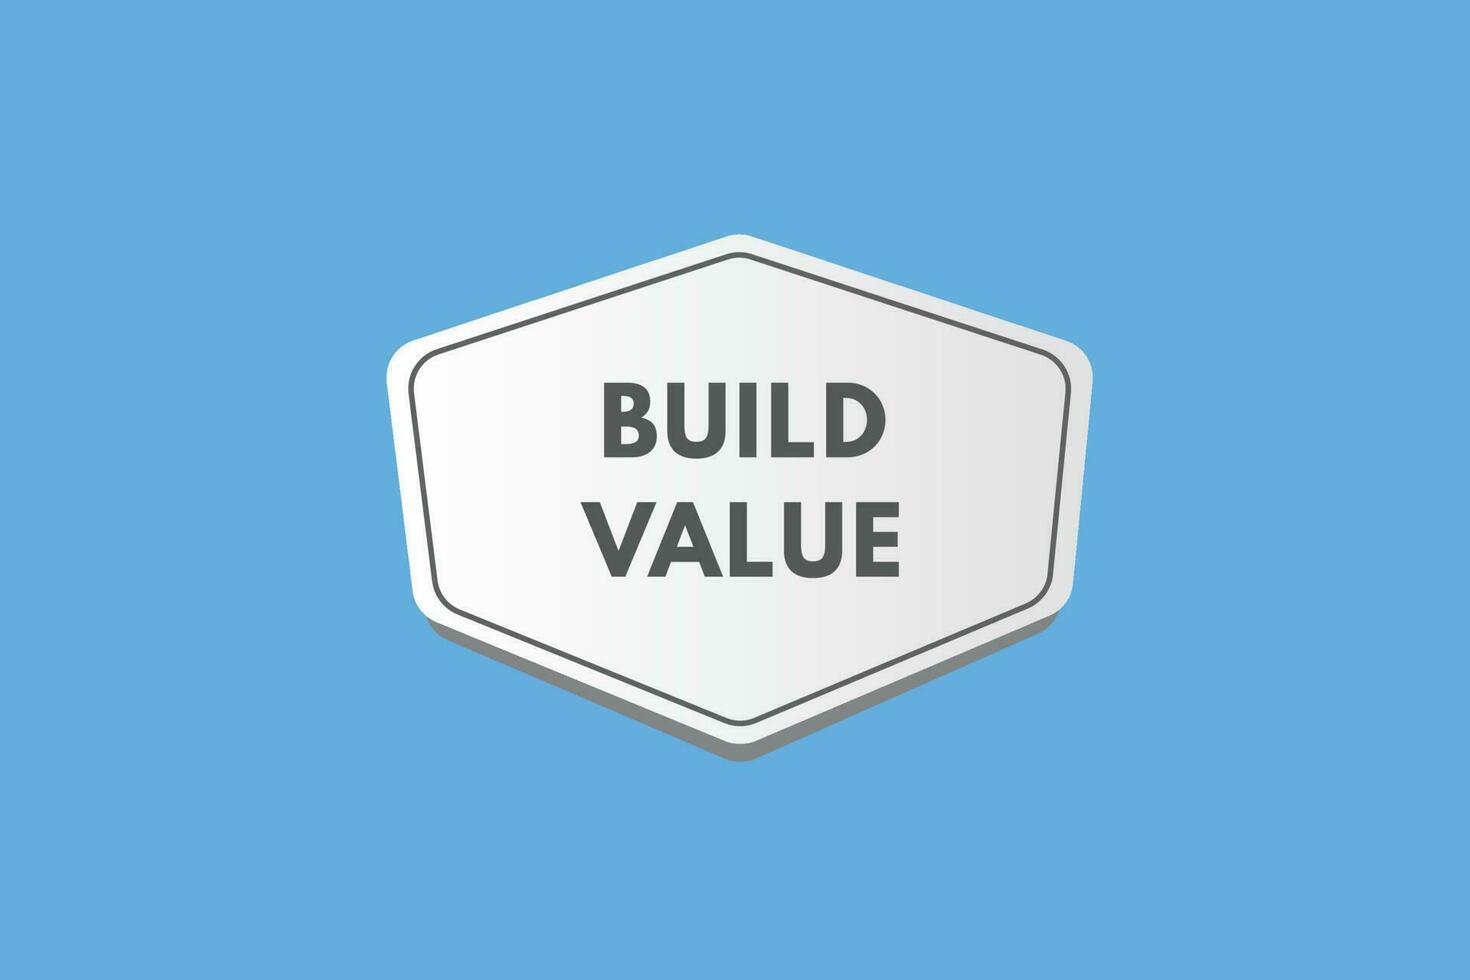 Construir valor texto botão. Construir valor placa ícone rótulo adesivo rede botões vetor